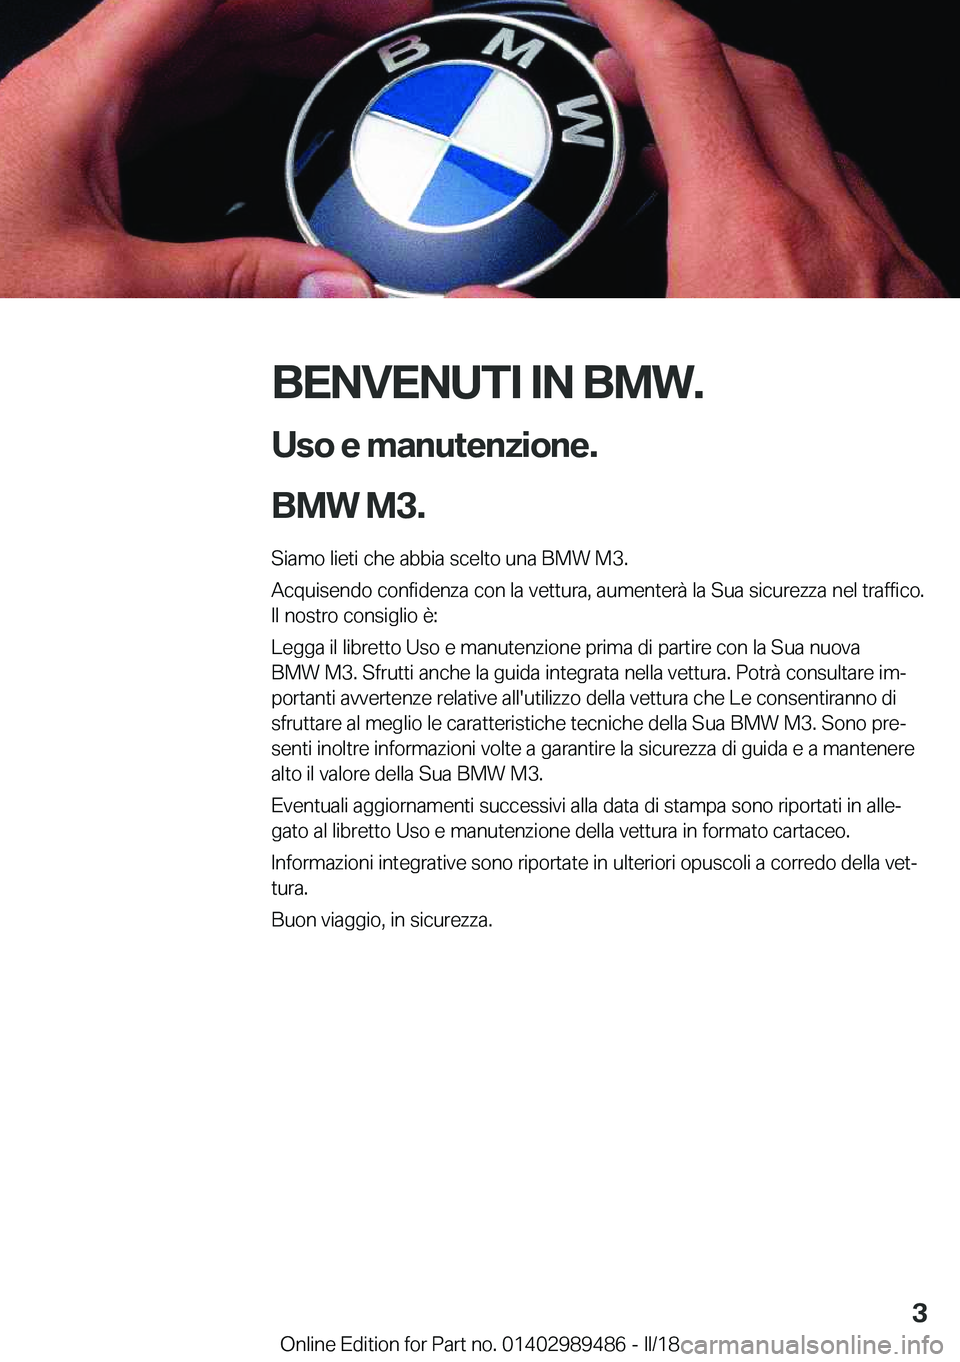 BMW M3 2018  Libretti Di Uso E manutenzione (in Italian) �B�E�N�V�E�N�U�T�I��I�N��B�M�W�.�U�s�o��e��m�a�n�u�t�e�n�z�i�o�n�e�.
�B�M�W��M�3�.
�S�i�a�m�o� �l�i�e�t�i� �c�h�e� �a�b�b�i�a� �s�c�e�l�t�o� �u�n�a� �B�M�W� �M�3�.
�A�c�q�u�i�s�e�n�d�o� �c�o�n�f�